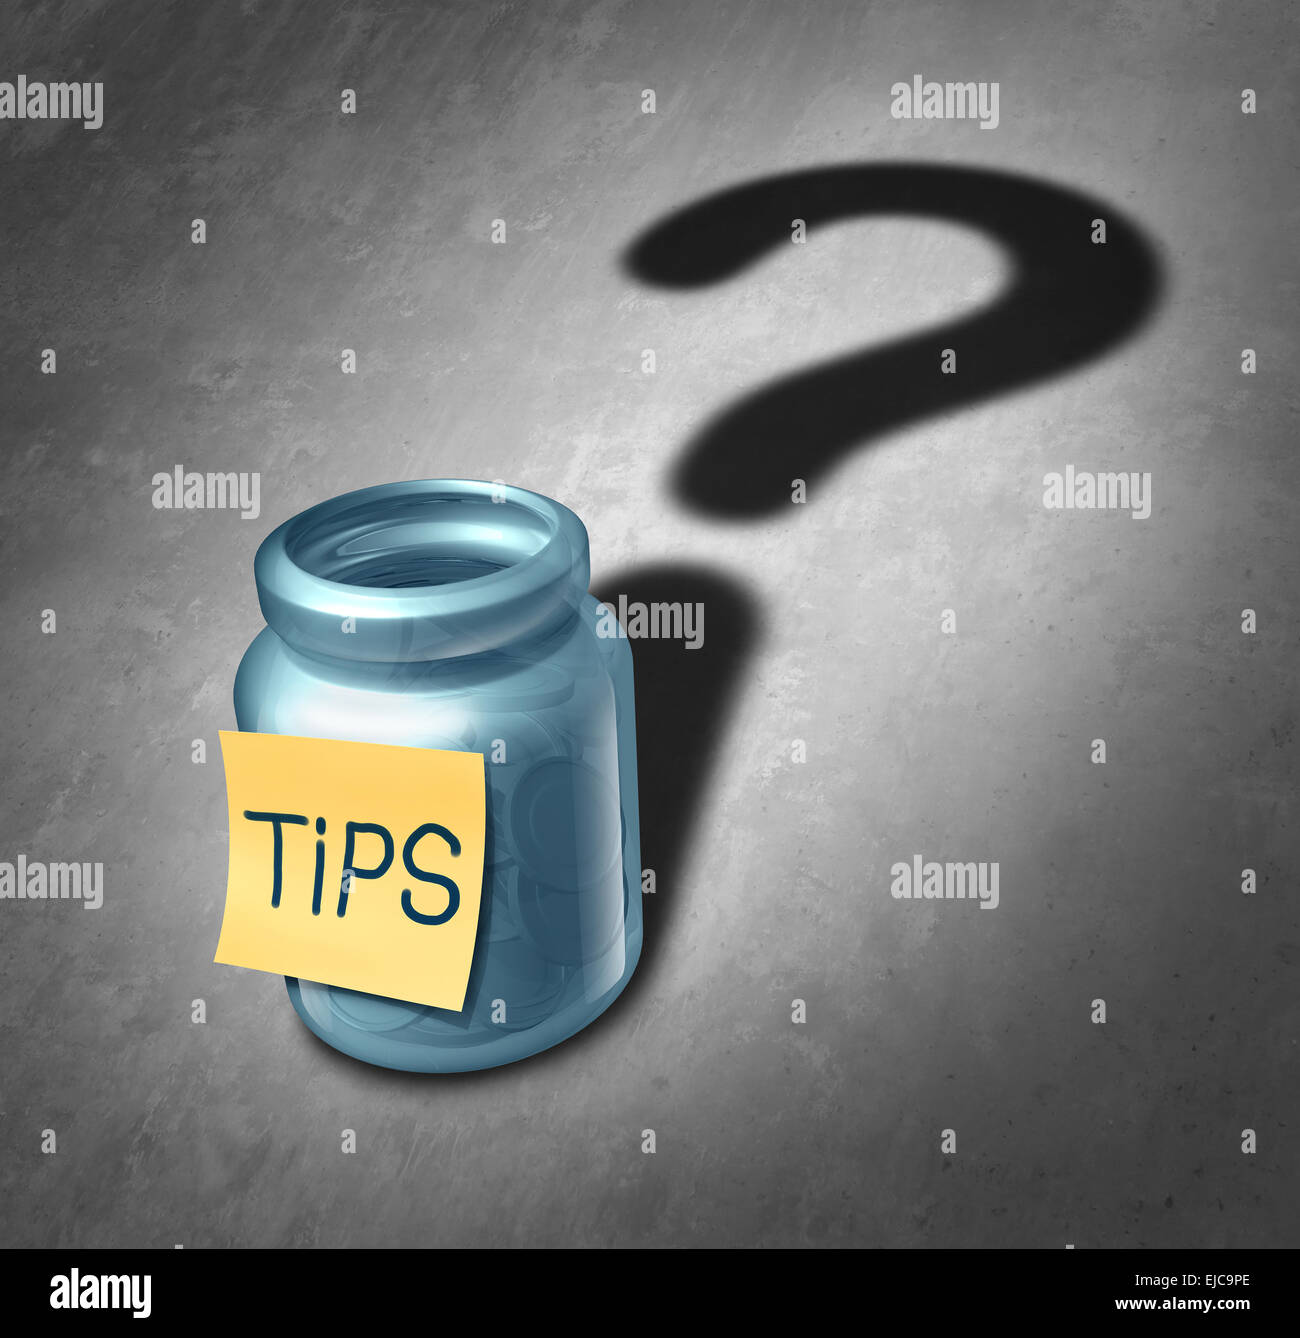 Tip Jar Symbol und kritischen Fragen Konzept als Trinkgeld Container mit Geld innen wirft einen Schatten, geformt wie ein Fragezeichen als Symbol für die Entscheidung, wie viel Geld für den Dienst geben. Stockfoto